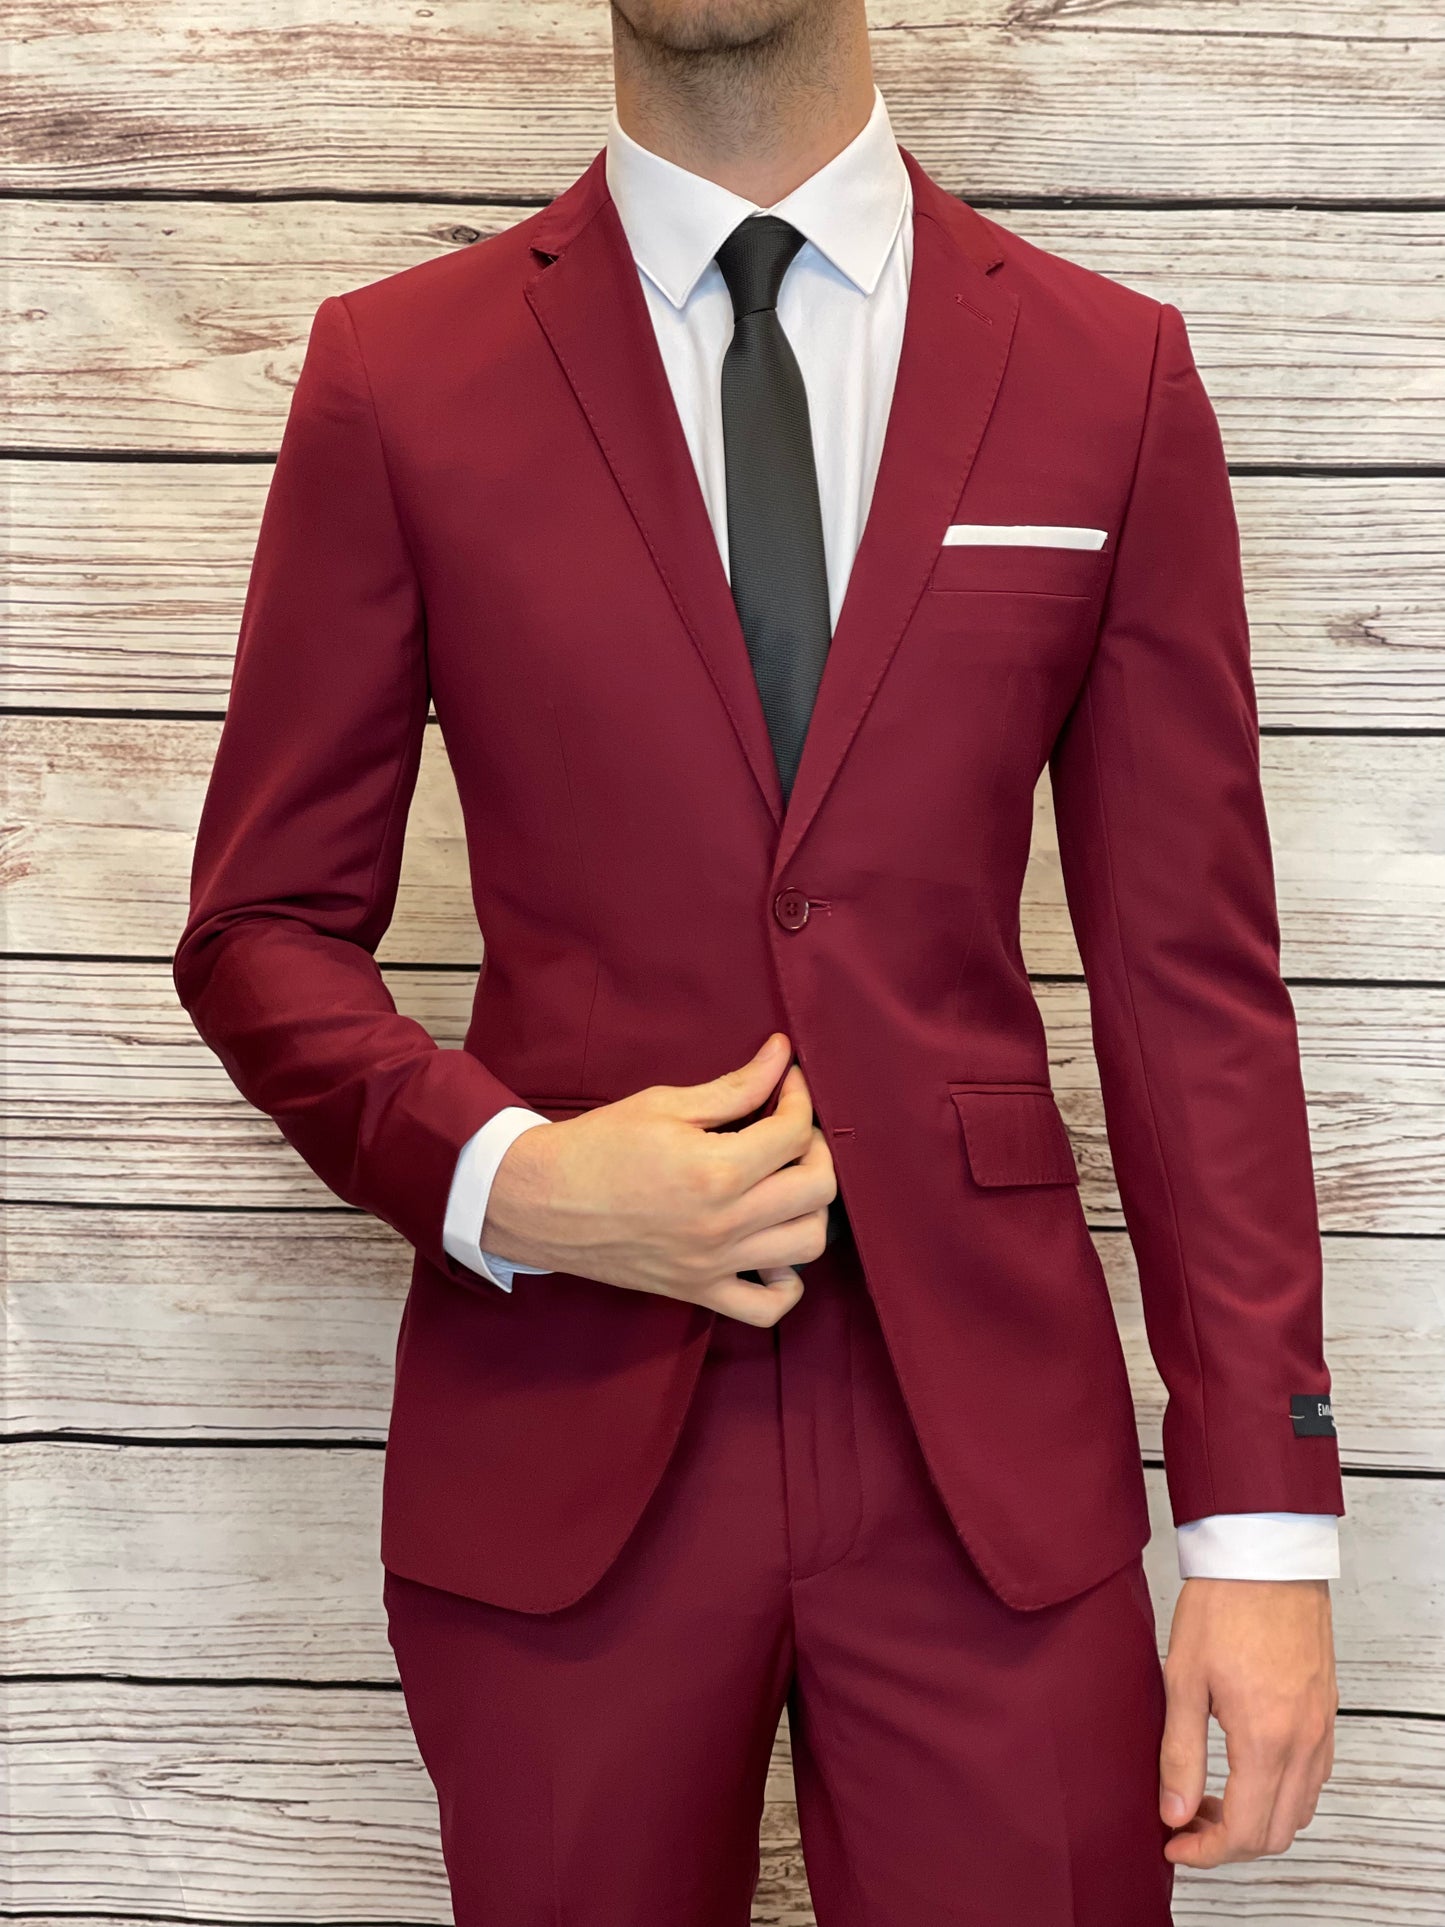 Suit EM Burgundy Red